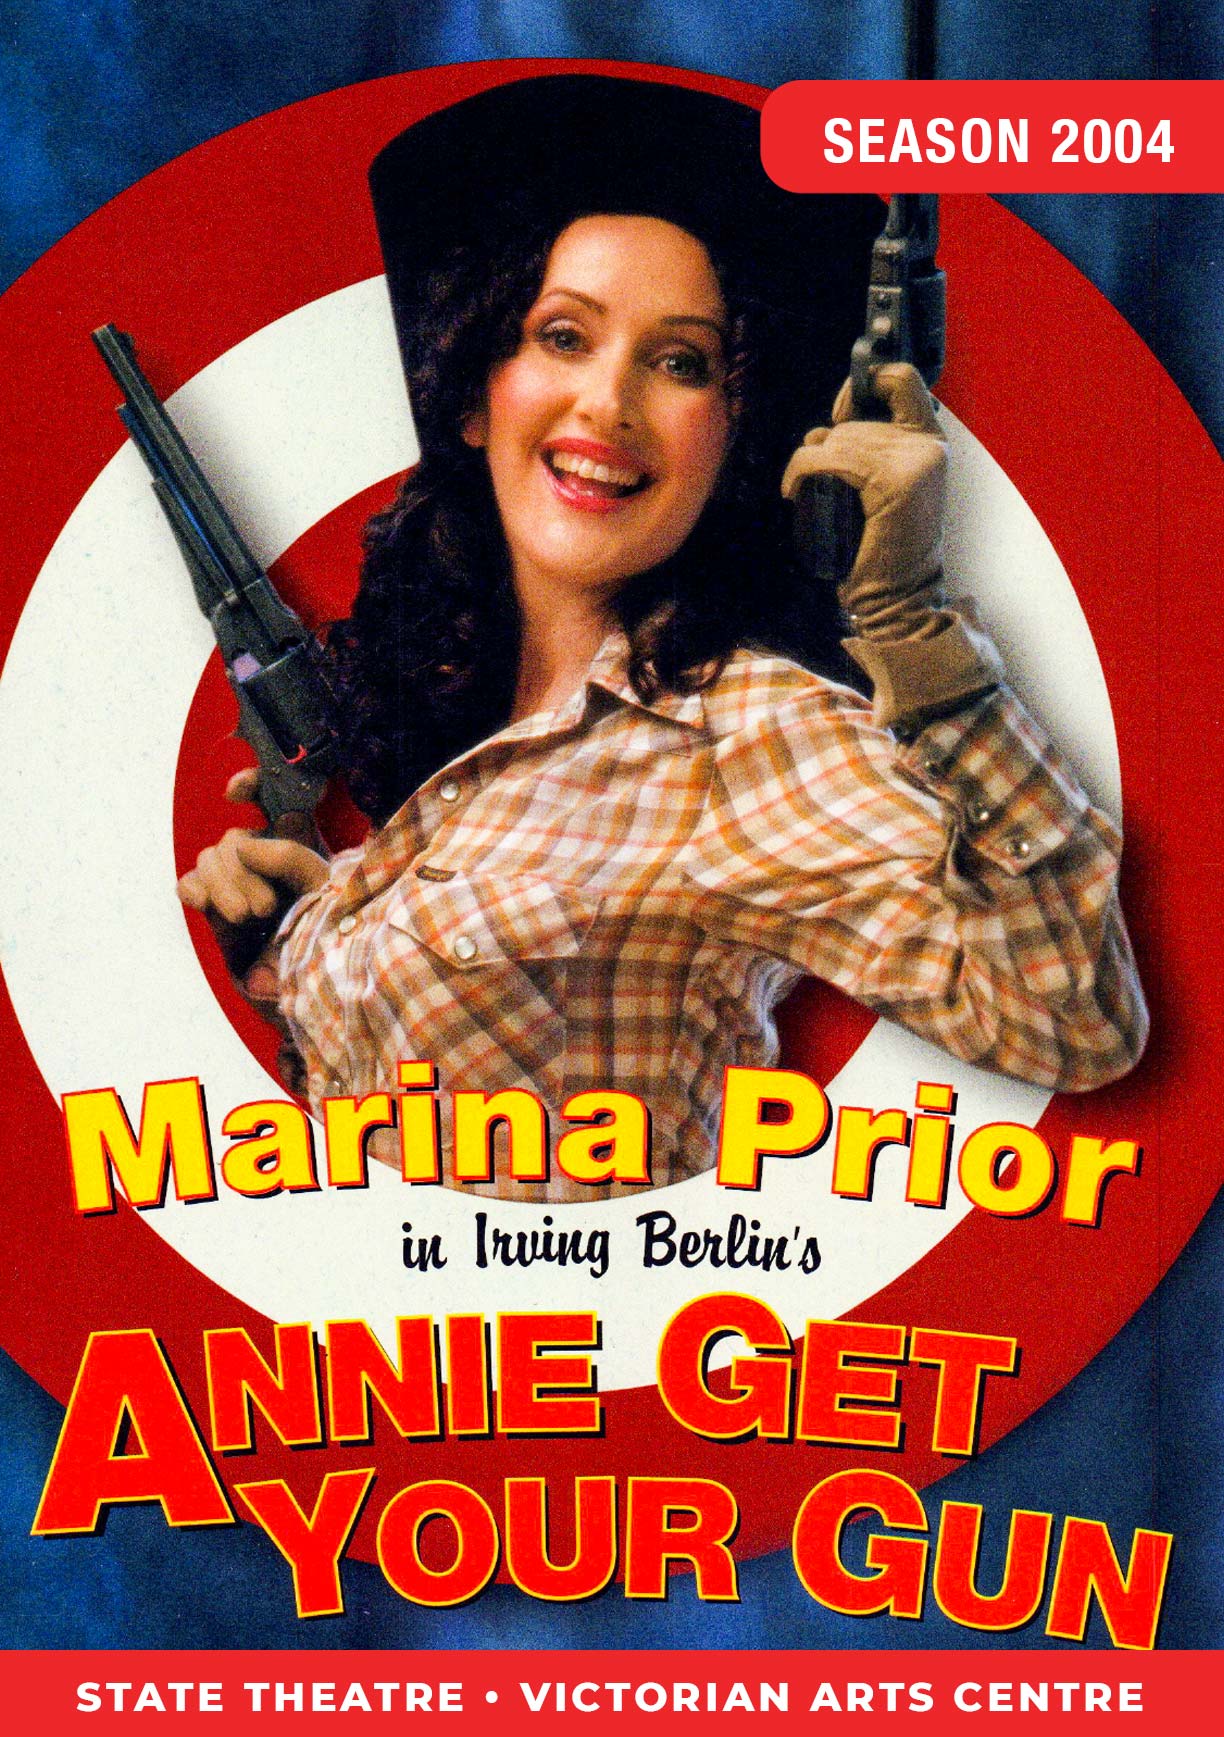 Annie get your gun artwork